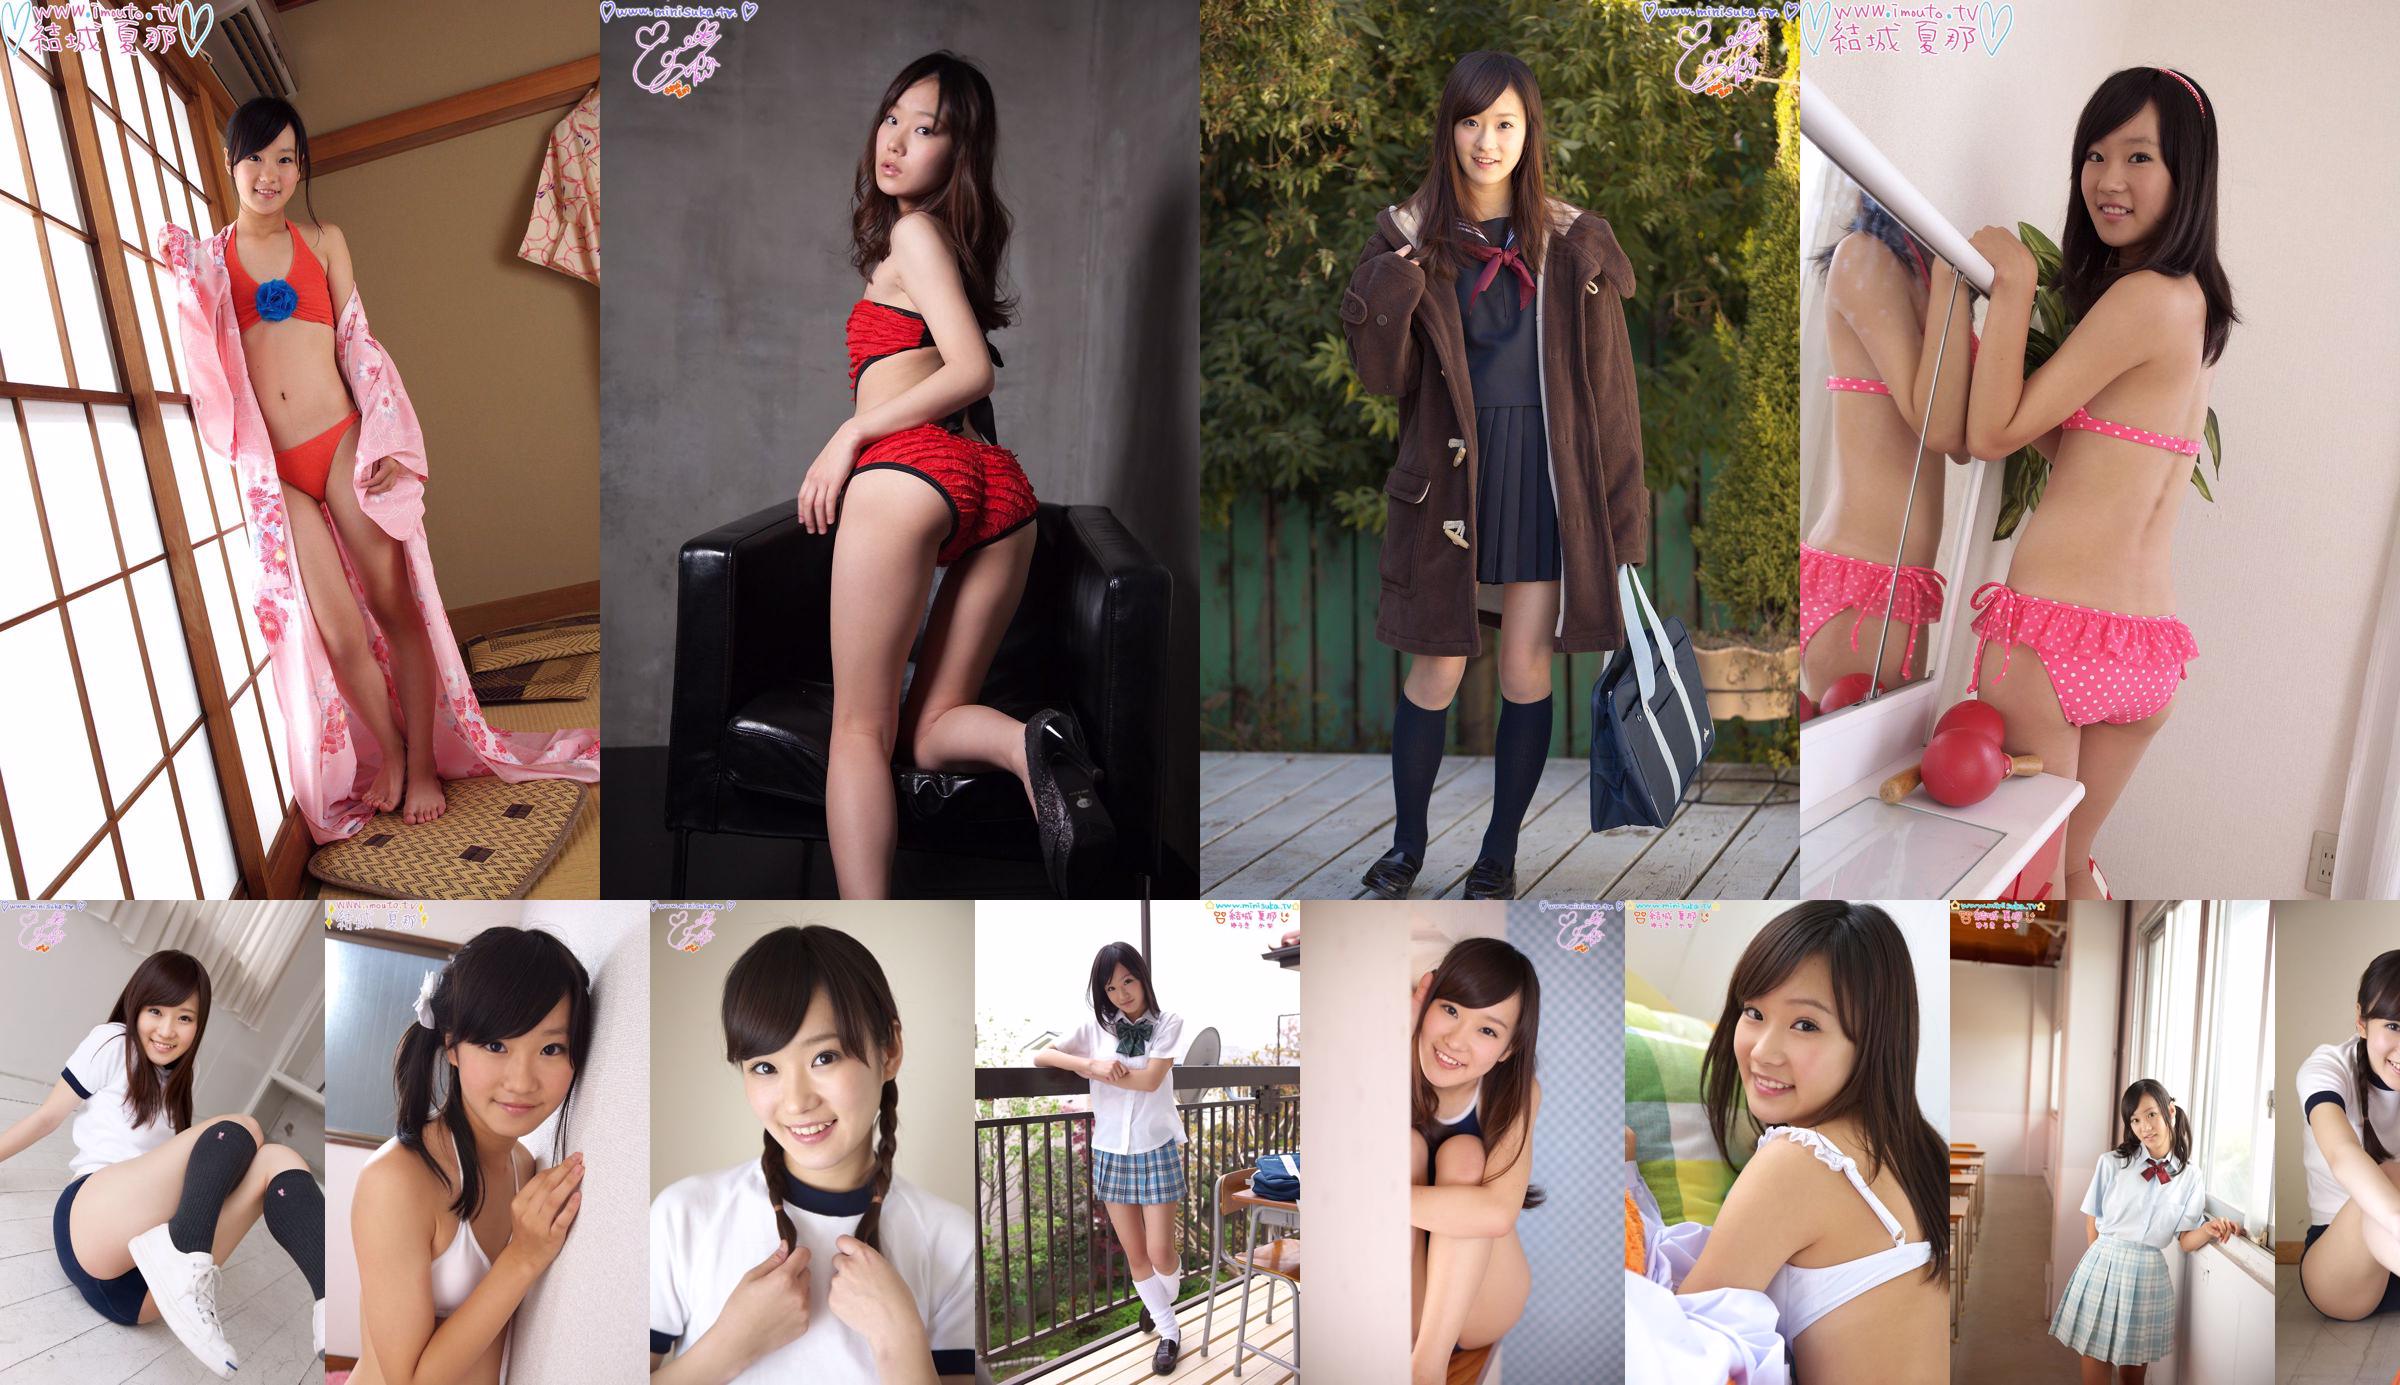 [Minisuka.tv] Natsuna Yuki Part 10 Active high school girl No.5f165b Page 1